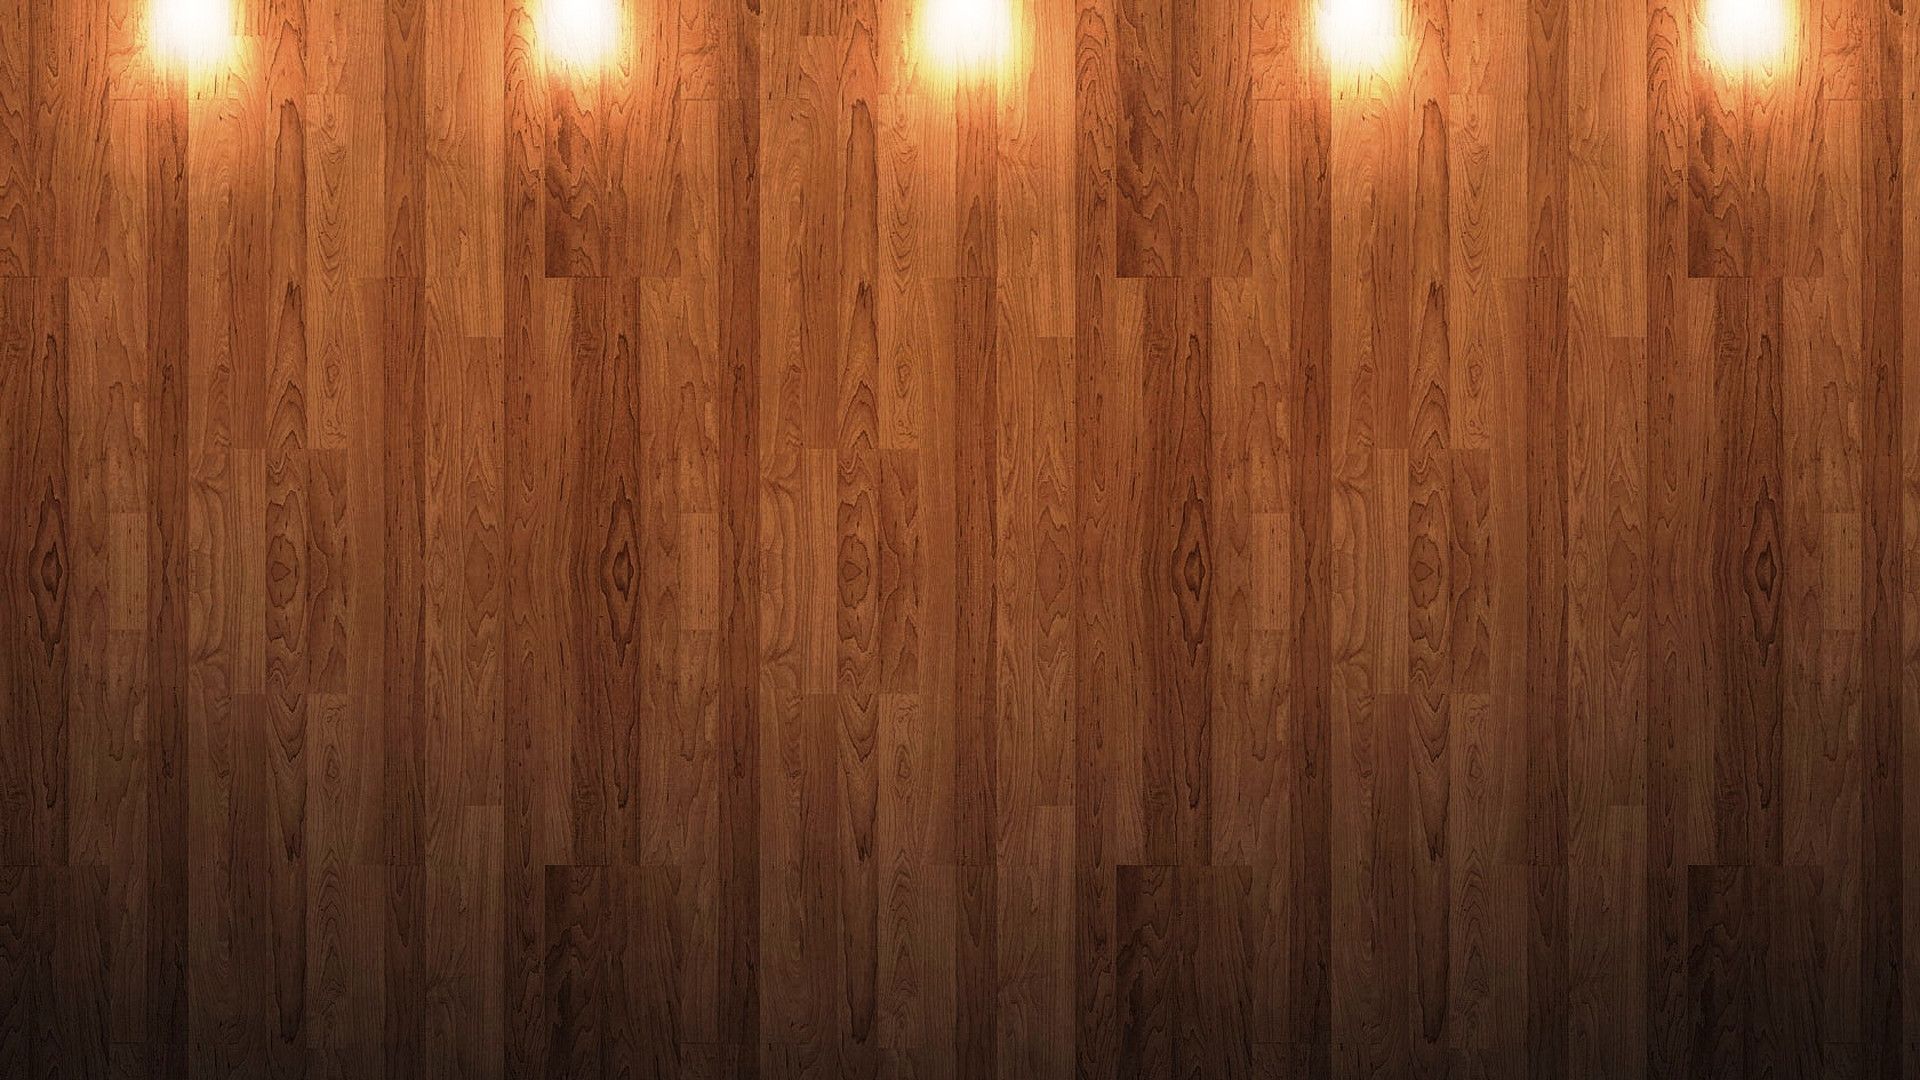 Họa tiết gỗ: Nét vẽ tinh tế và họa tiết gỗ tự nhiên trên tấm gỗ tạo nên một thiết kế đẹp mắt cho bức ảnh. Sự kết hợp này là một lựa chọn hoàn hảo để làm nổi bật bất kỳ không gian trong nhà bạn.